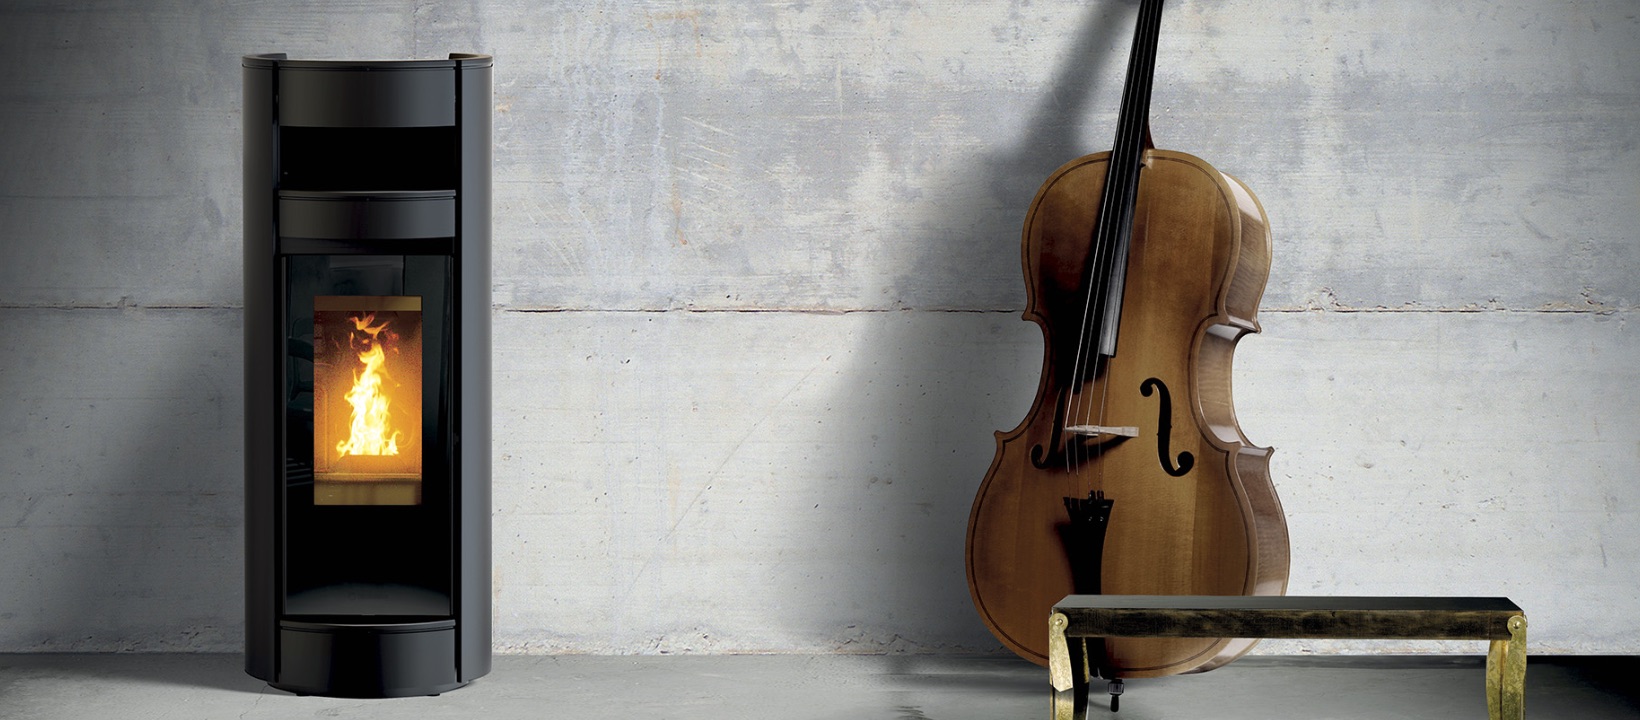 Beeld van een Thermorossi pelletkachel naast een cello